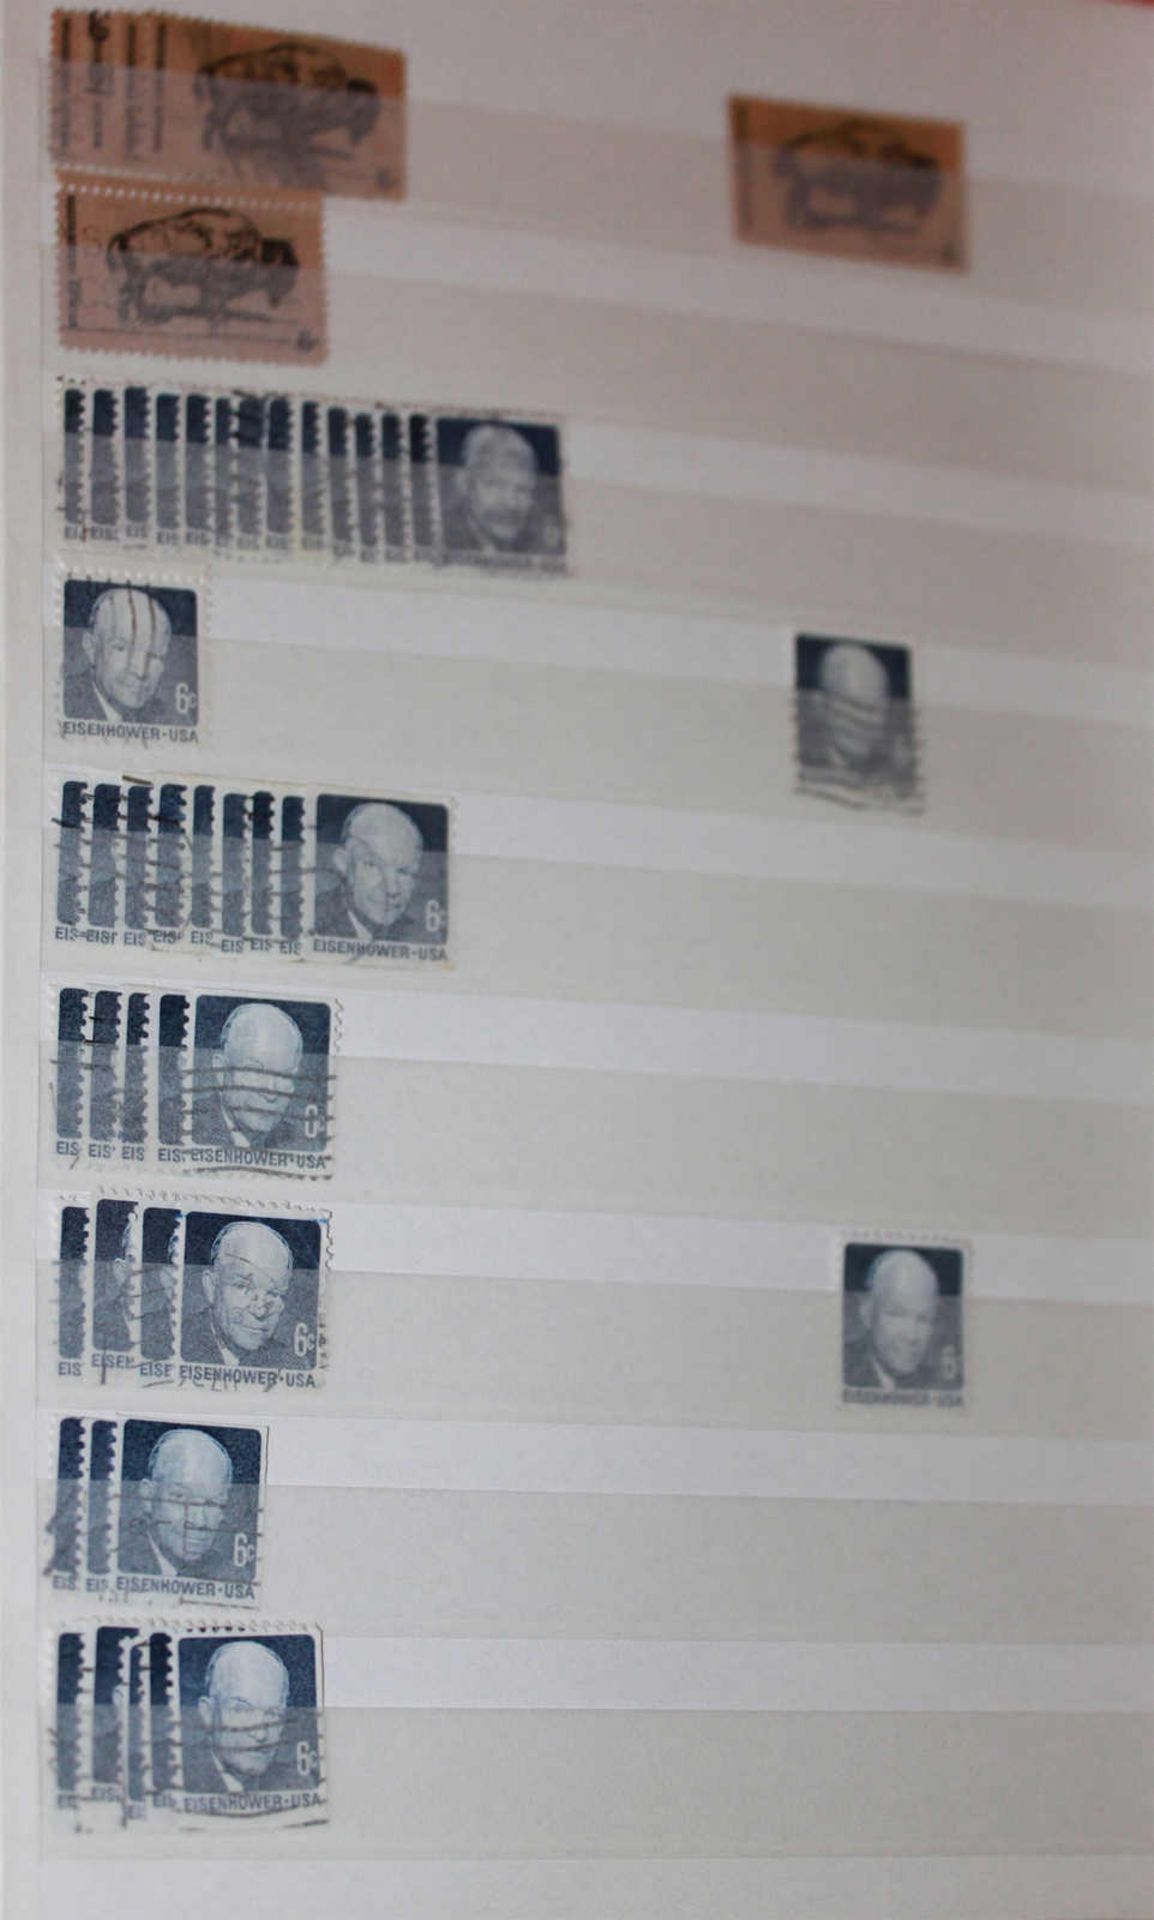 kleines Lot Briefmarkenalben, "USA", insgesamt 4 AlbenMindestpreis: 20 EUR - Image 4 of 4